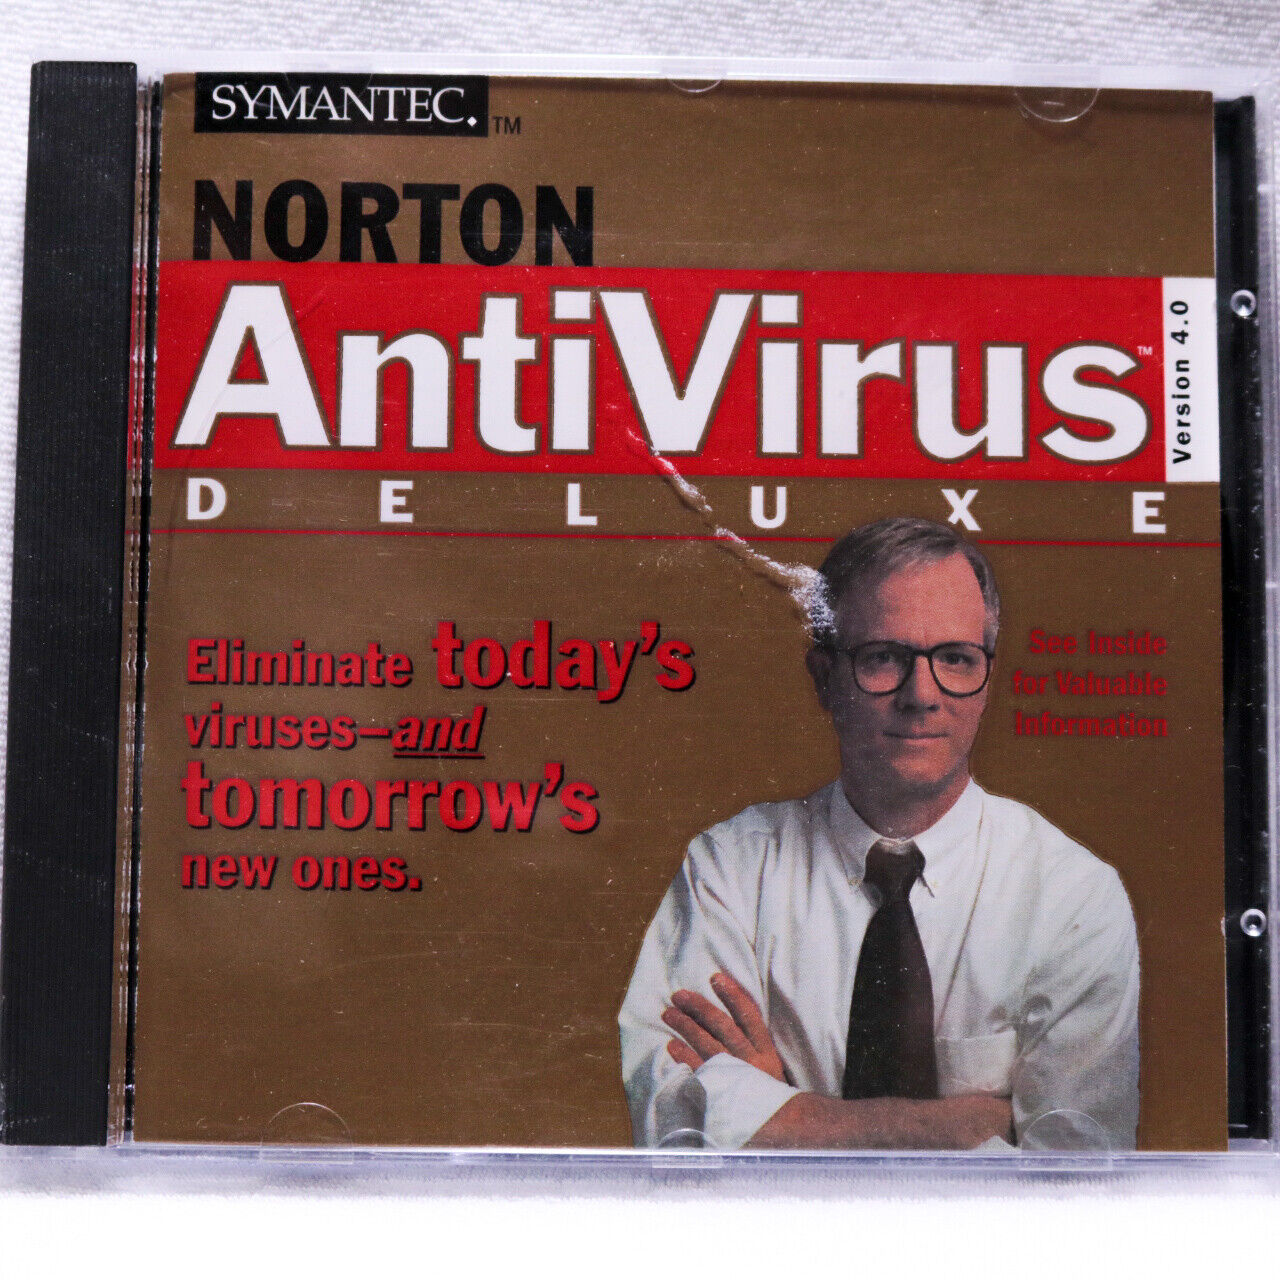 Symantec Norton AntiVirus Deluxe: Version 4.0 (CD-ROM, 1997)